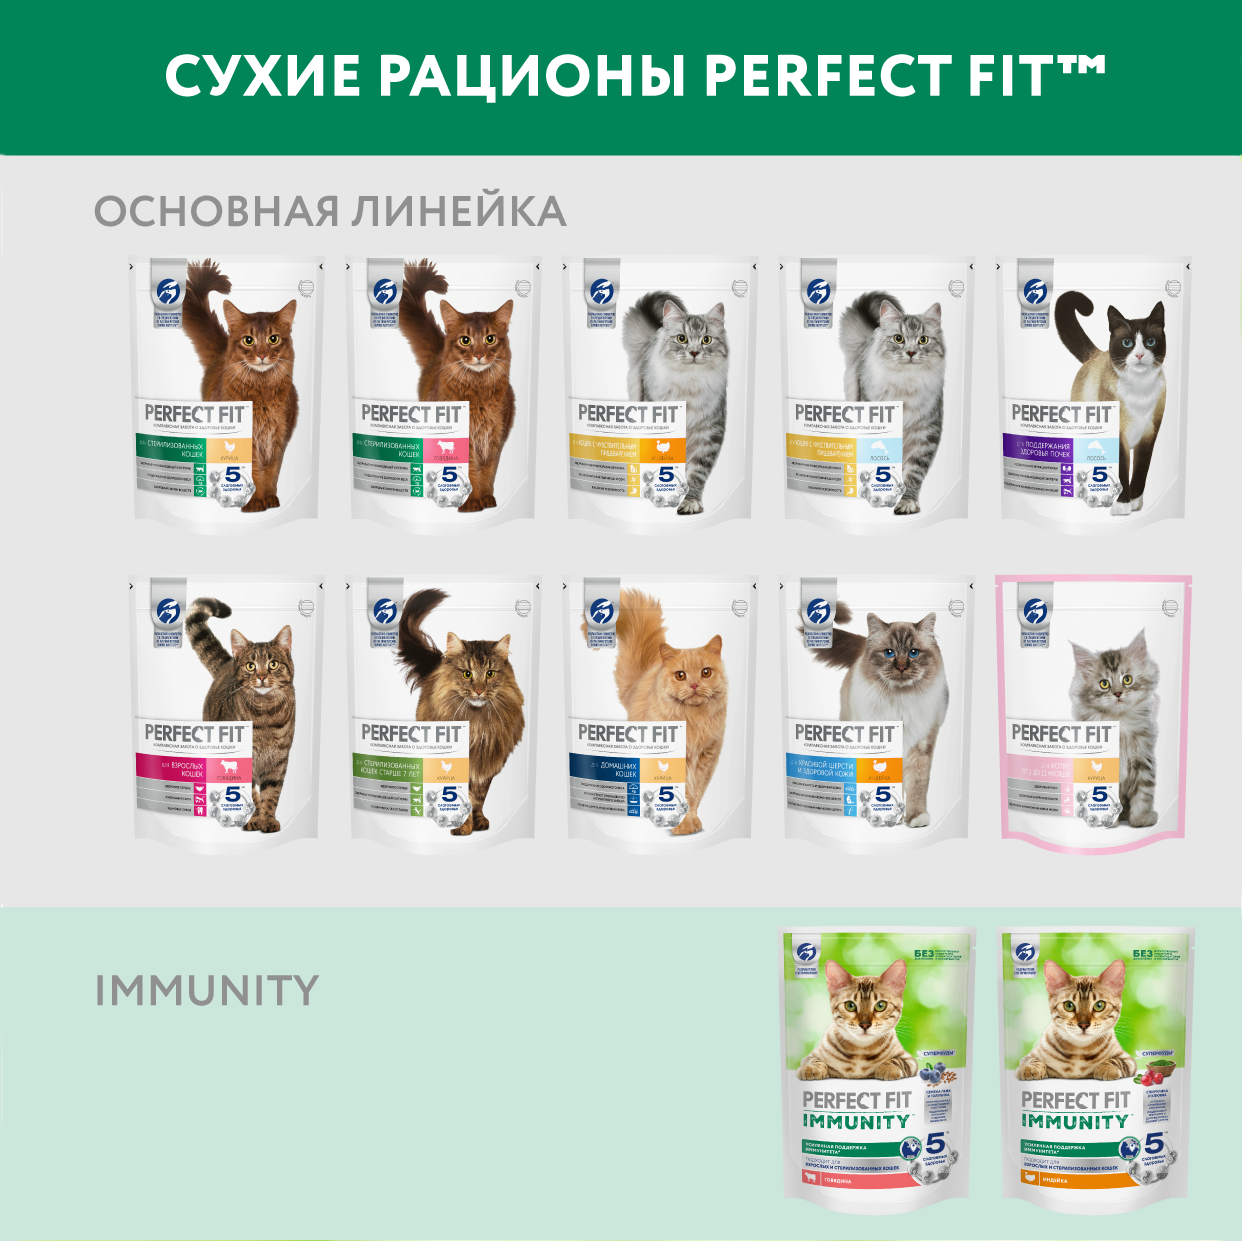 Perfect Fit Immunity корм для иммунитета кошек, говядина, семена льна, голубика, 5,5 кг. - фотография № 12